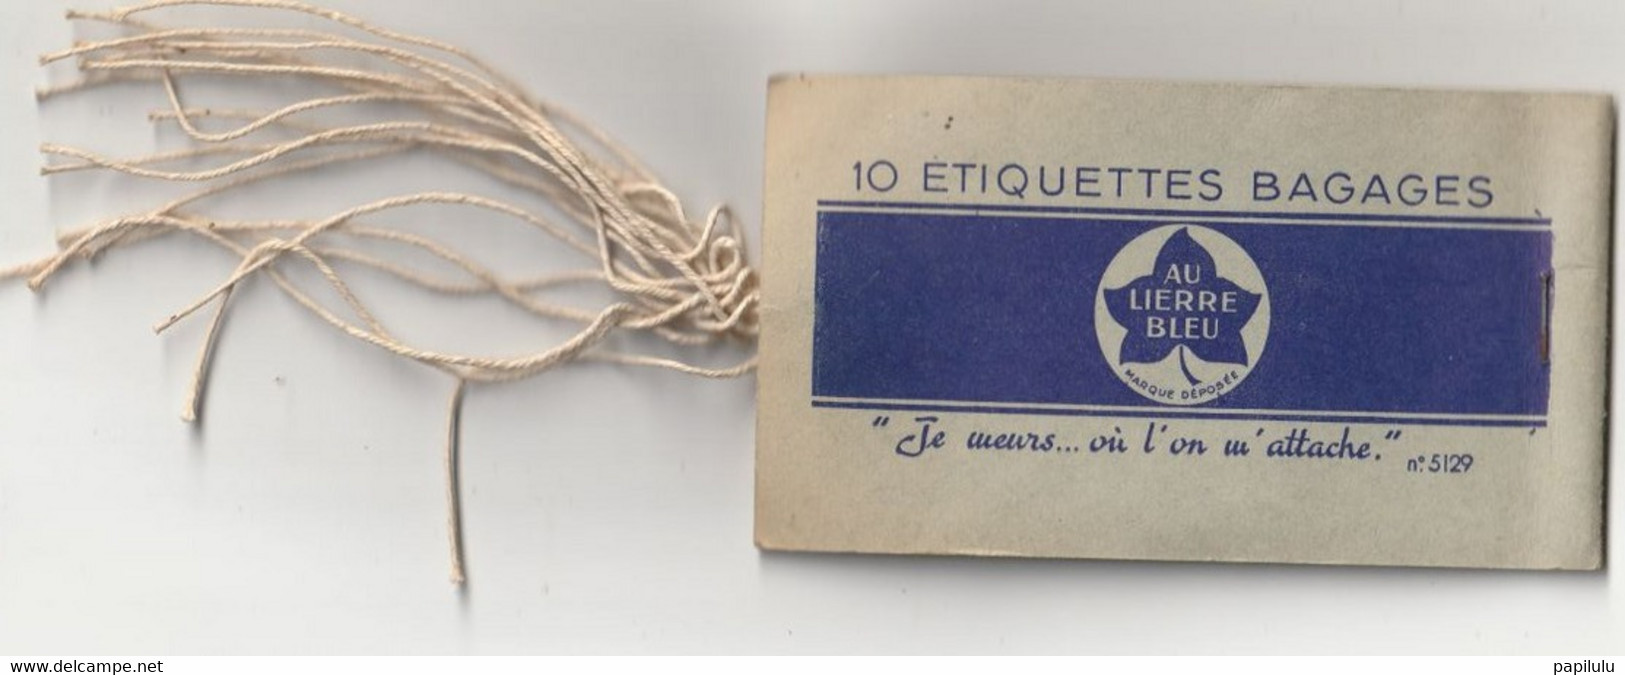 AUTRES COLLECTIONS 30 : Au Lierre Bleu 10 étiquettes Bagages ( Manque Une étiquette ) - Etiquetas De Equipaje